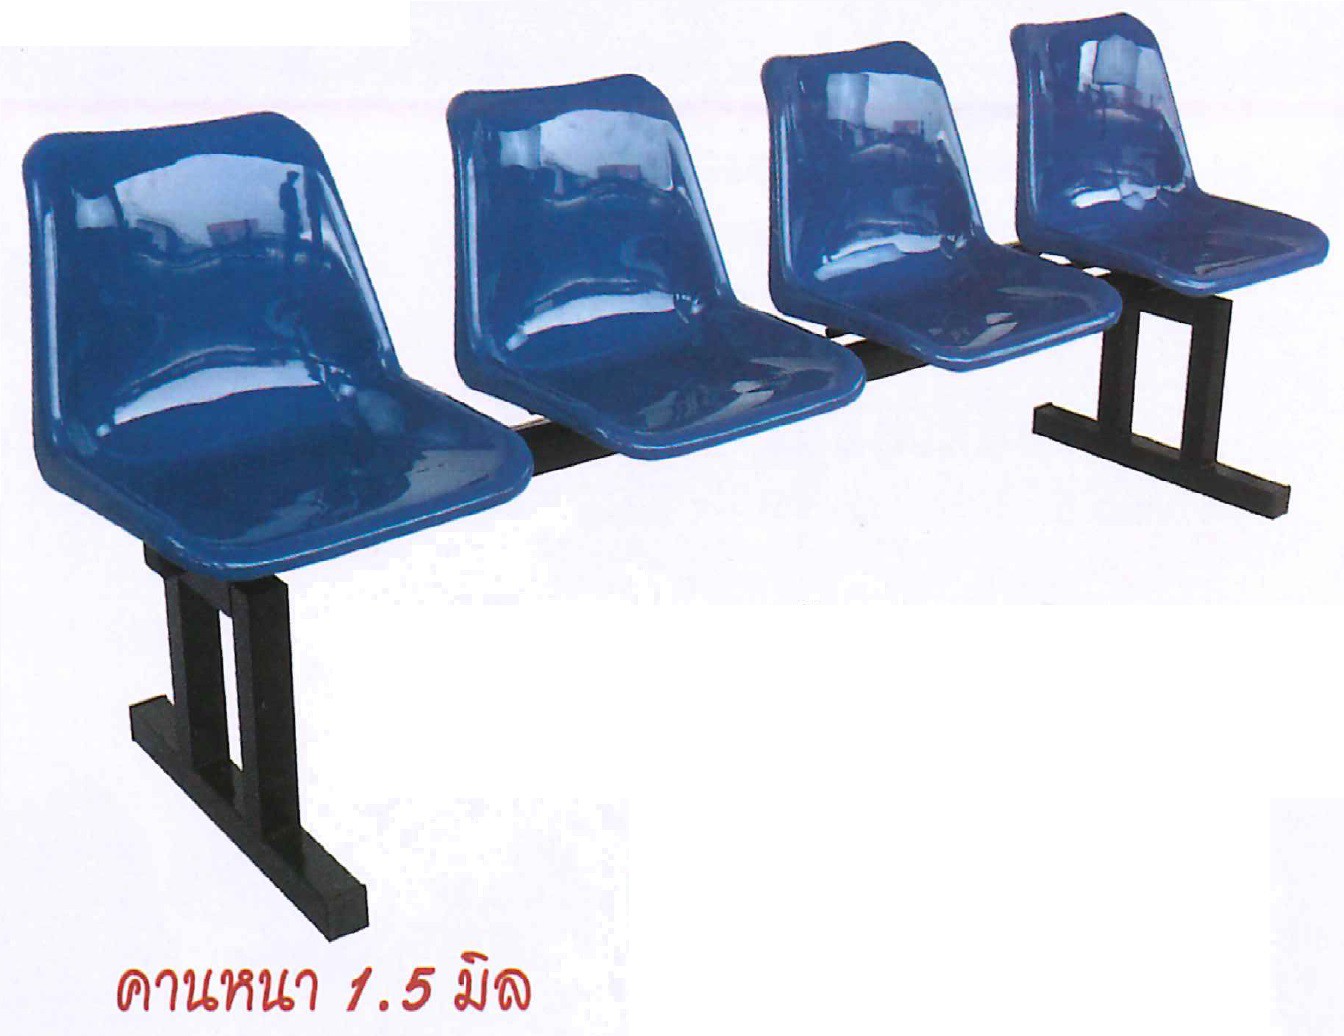 DG/CTTT-PL4,เก้าอี้แถวโพลีขาคู่4ที่นั่ง,เก้าอี้แถว,เก้าอี้โพลี,เก้าอี้พักคอย,เก้าอี้,chair